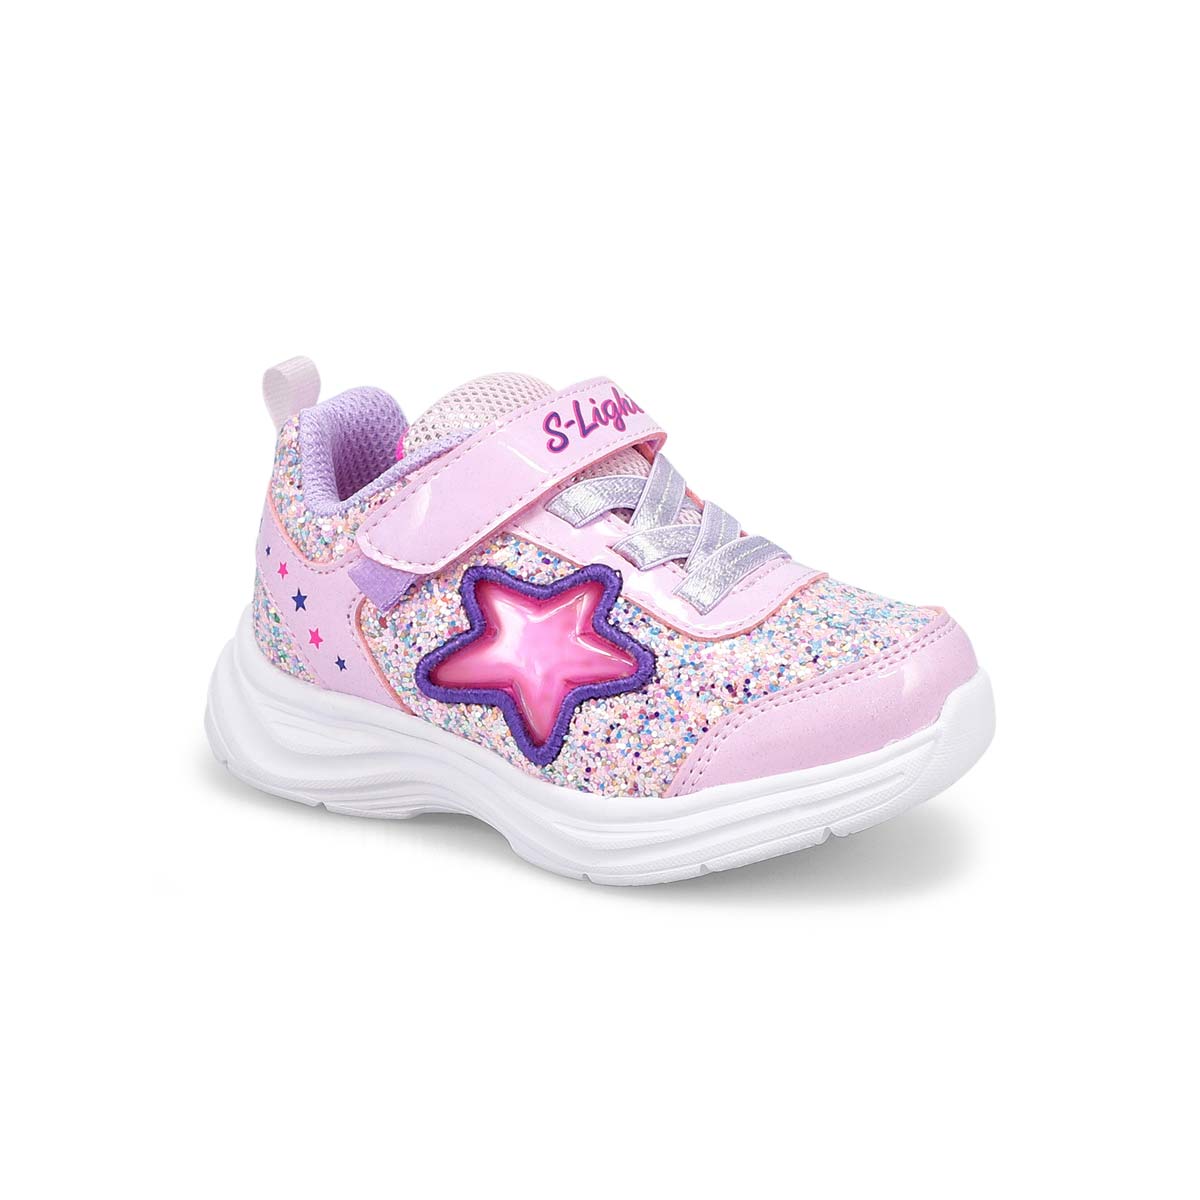 Infants' Glimmer Kicks Lighted Sneaker -Pink/Lav